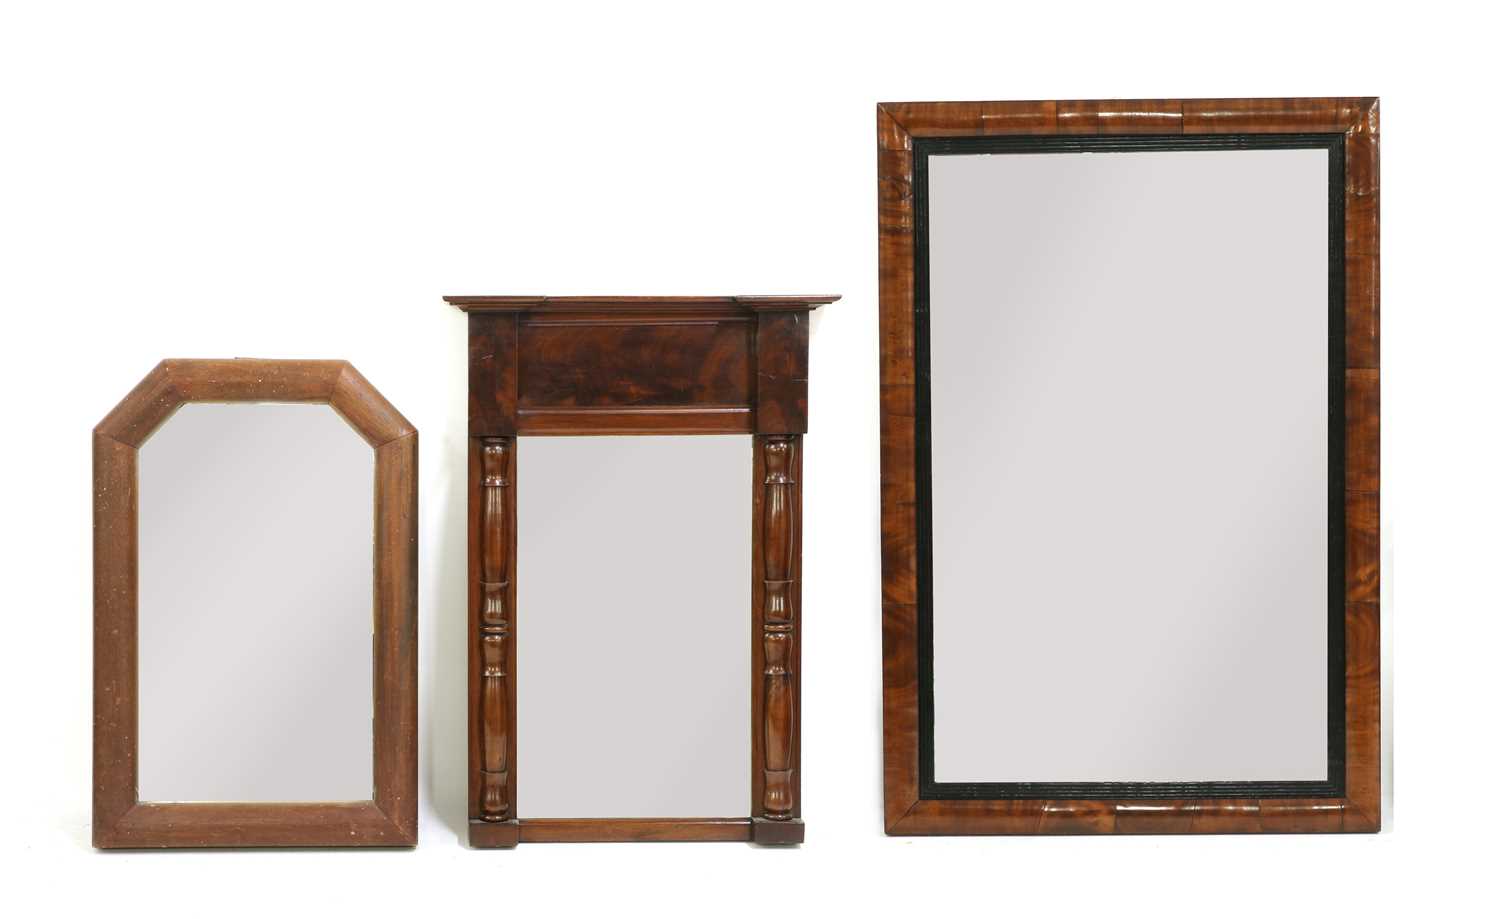 Lot 289 - A 19th century walnut cushion framed wall mirror